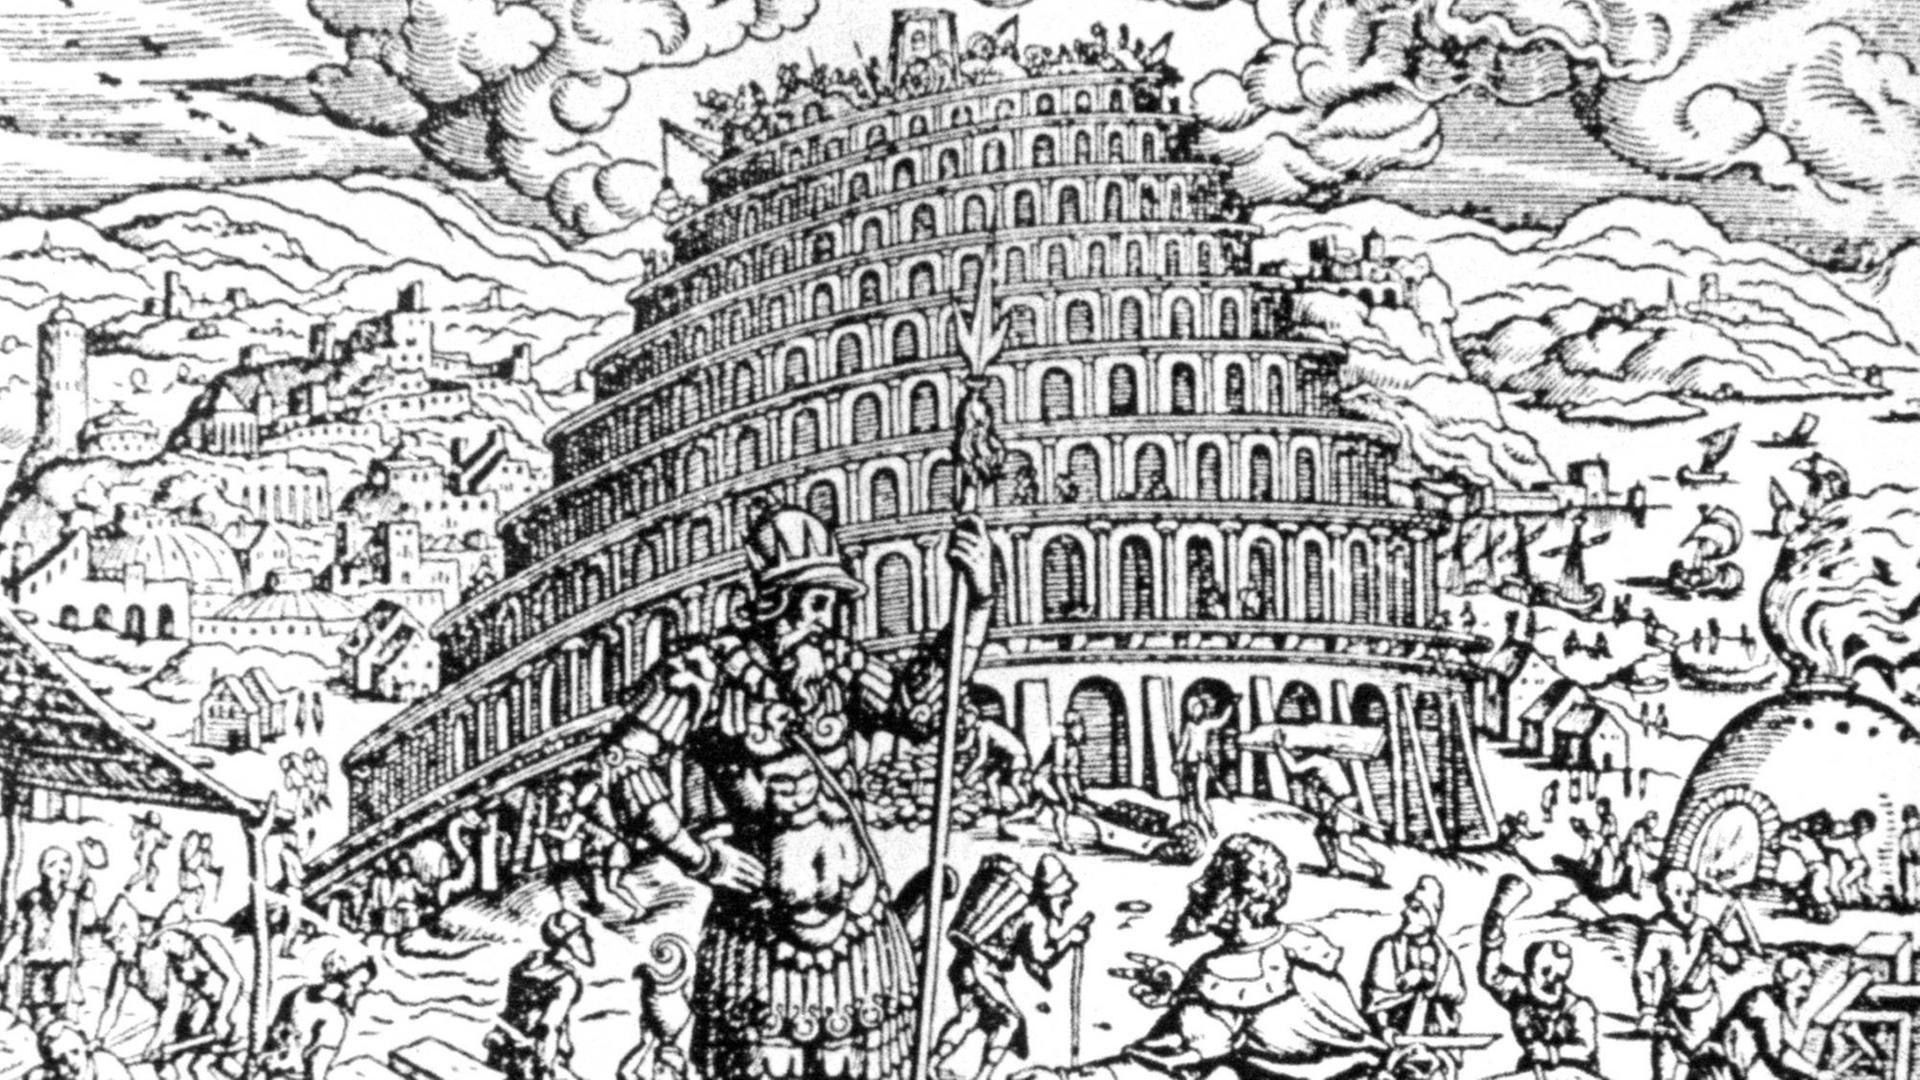 Stich von Feyerabend aus dem Jahr 1566 vom Turmbau zu Babel.